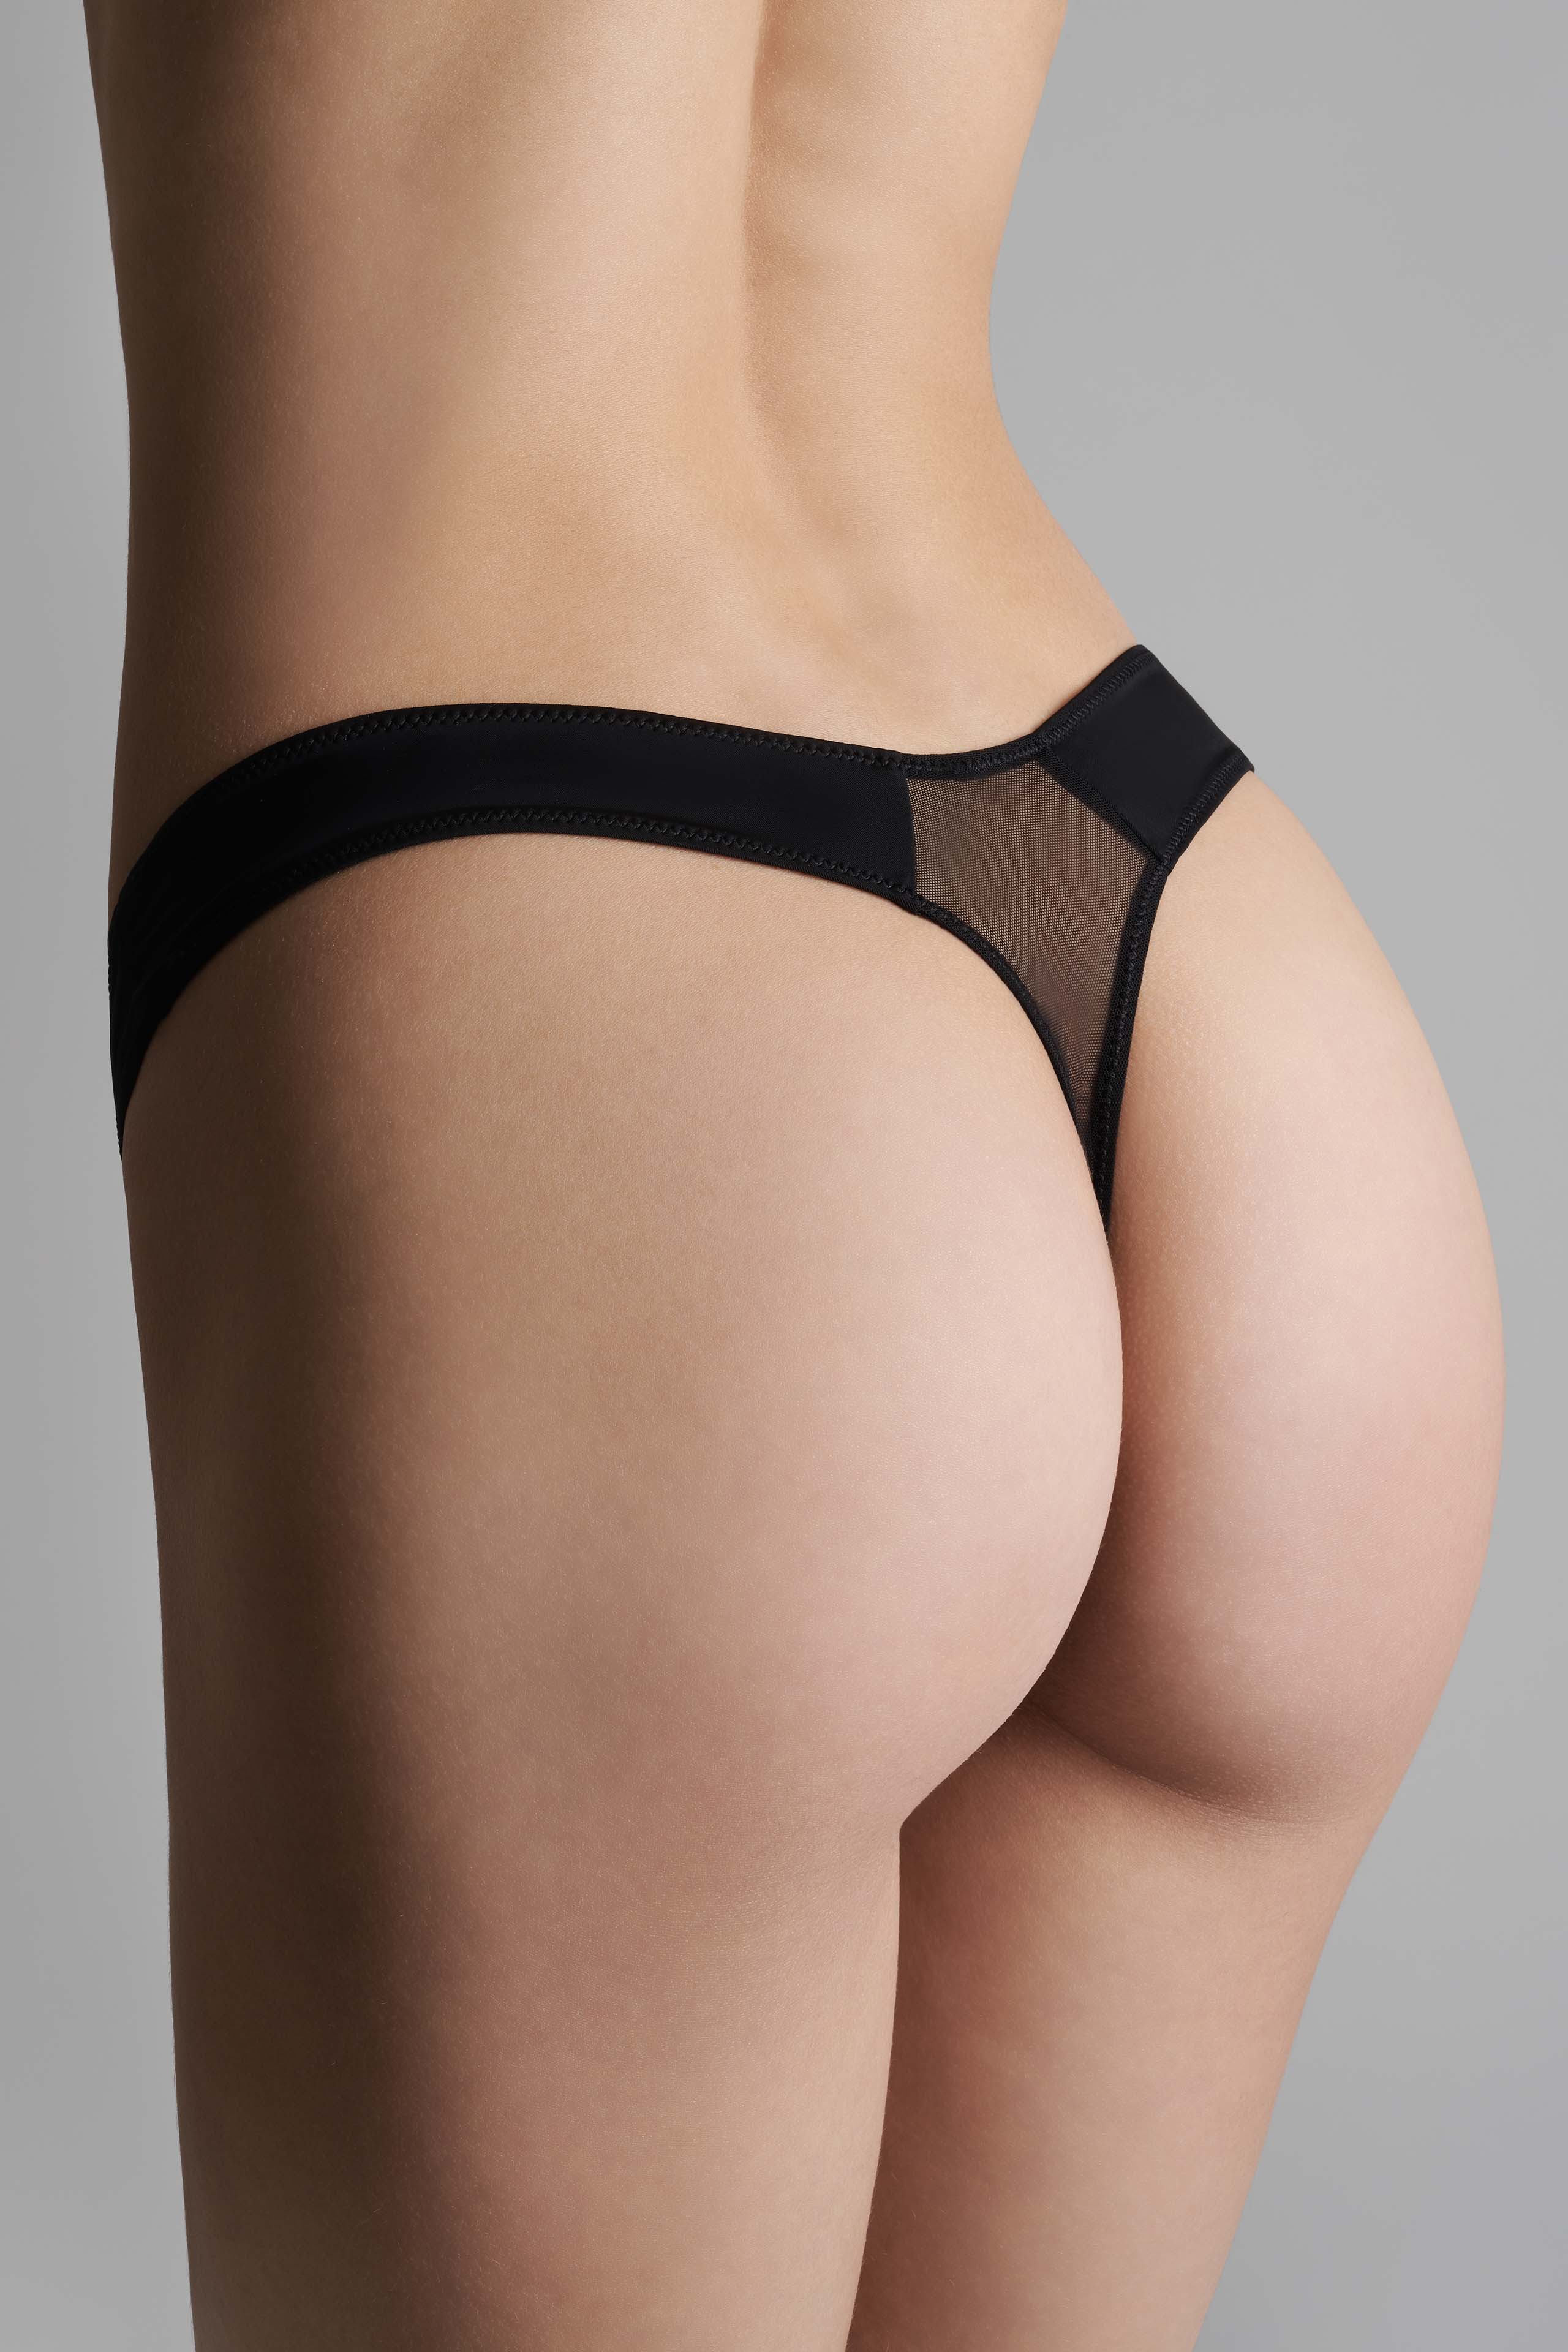 Women Lingerie High Cut Thongs V Back Underwear Nightwear G-string